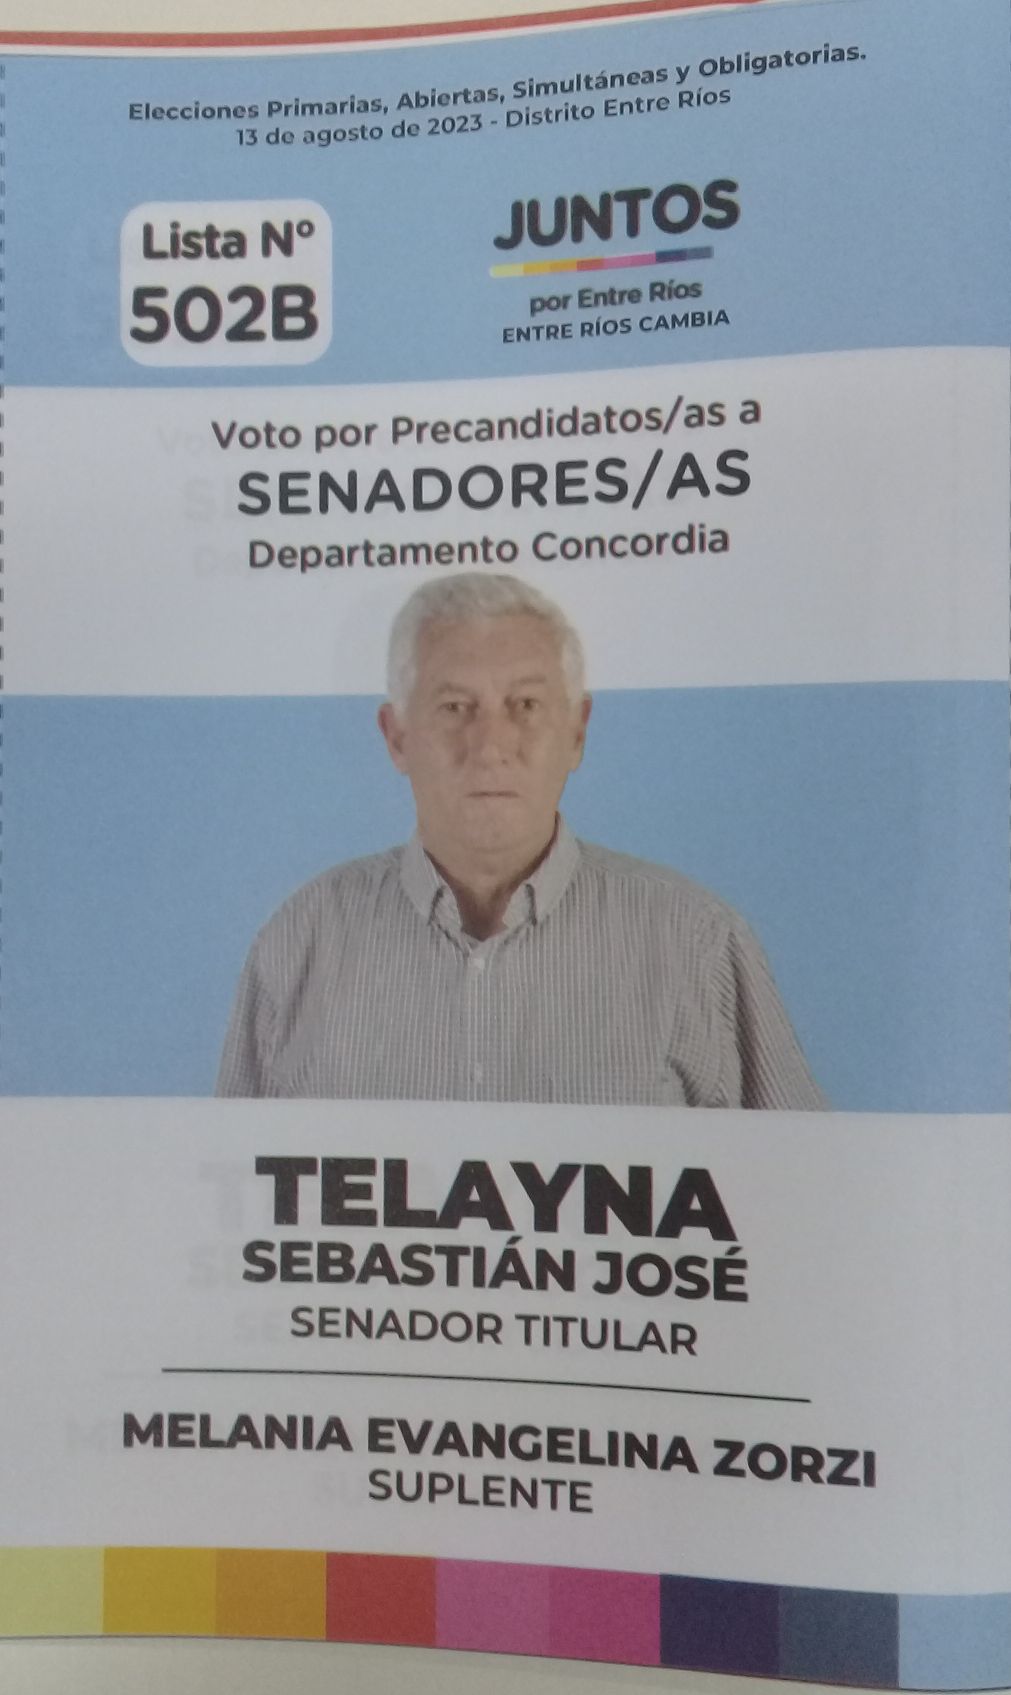 Lista 502B, Juntos por Entre Ríos, encabezada por Sebastián José Telayna.